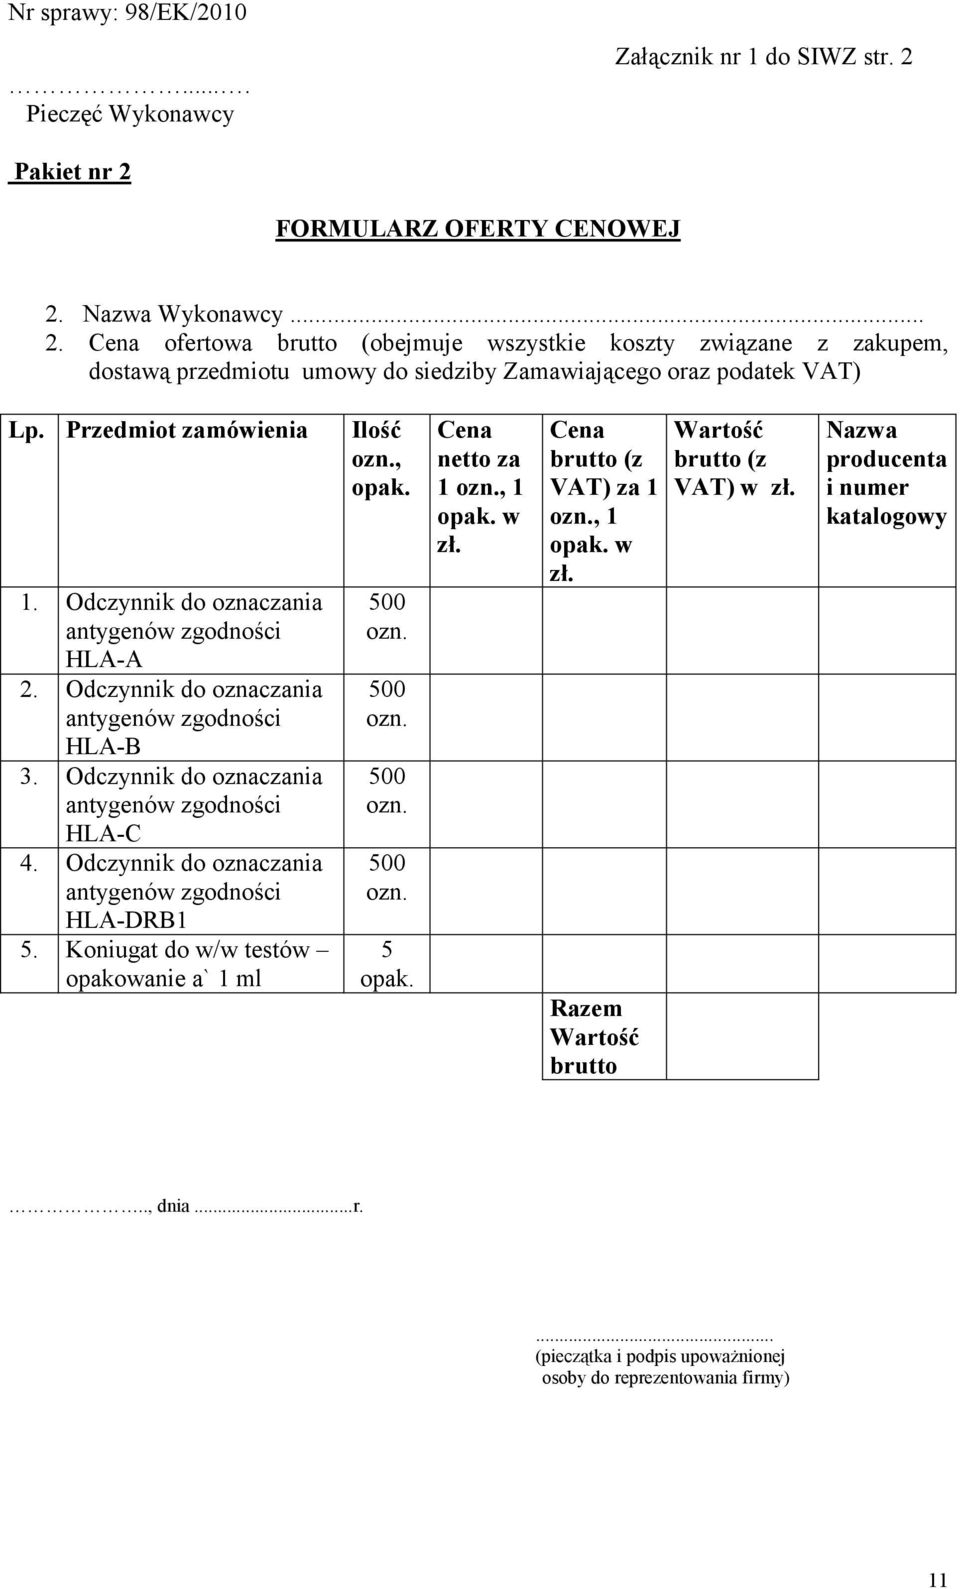 Odczynnik do oznaczania antygenów zgodności HLA-A 2. Odczynnik do oznaczania antygenów zgodności HLA-B 3. Odczynnik do oznaczania antygenów zgodności HLA-C 4.